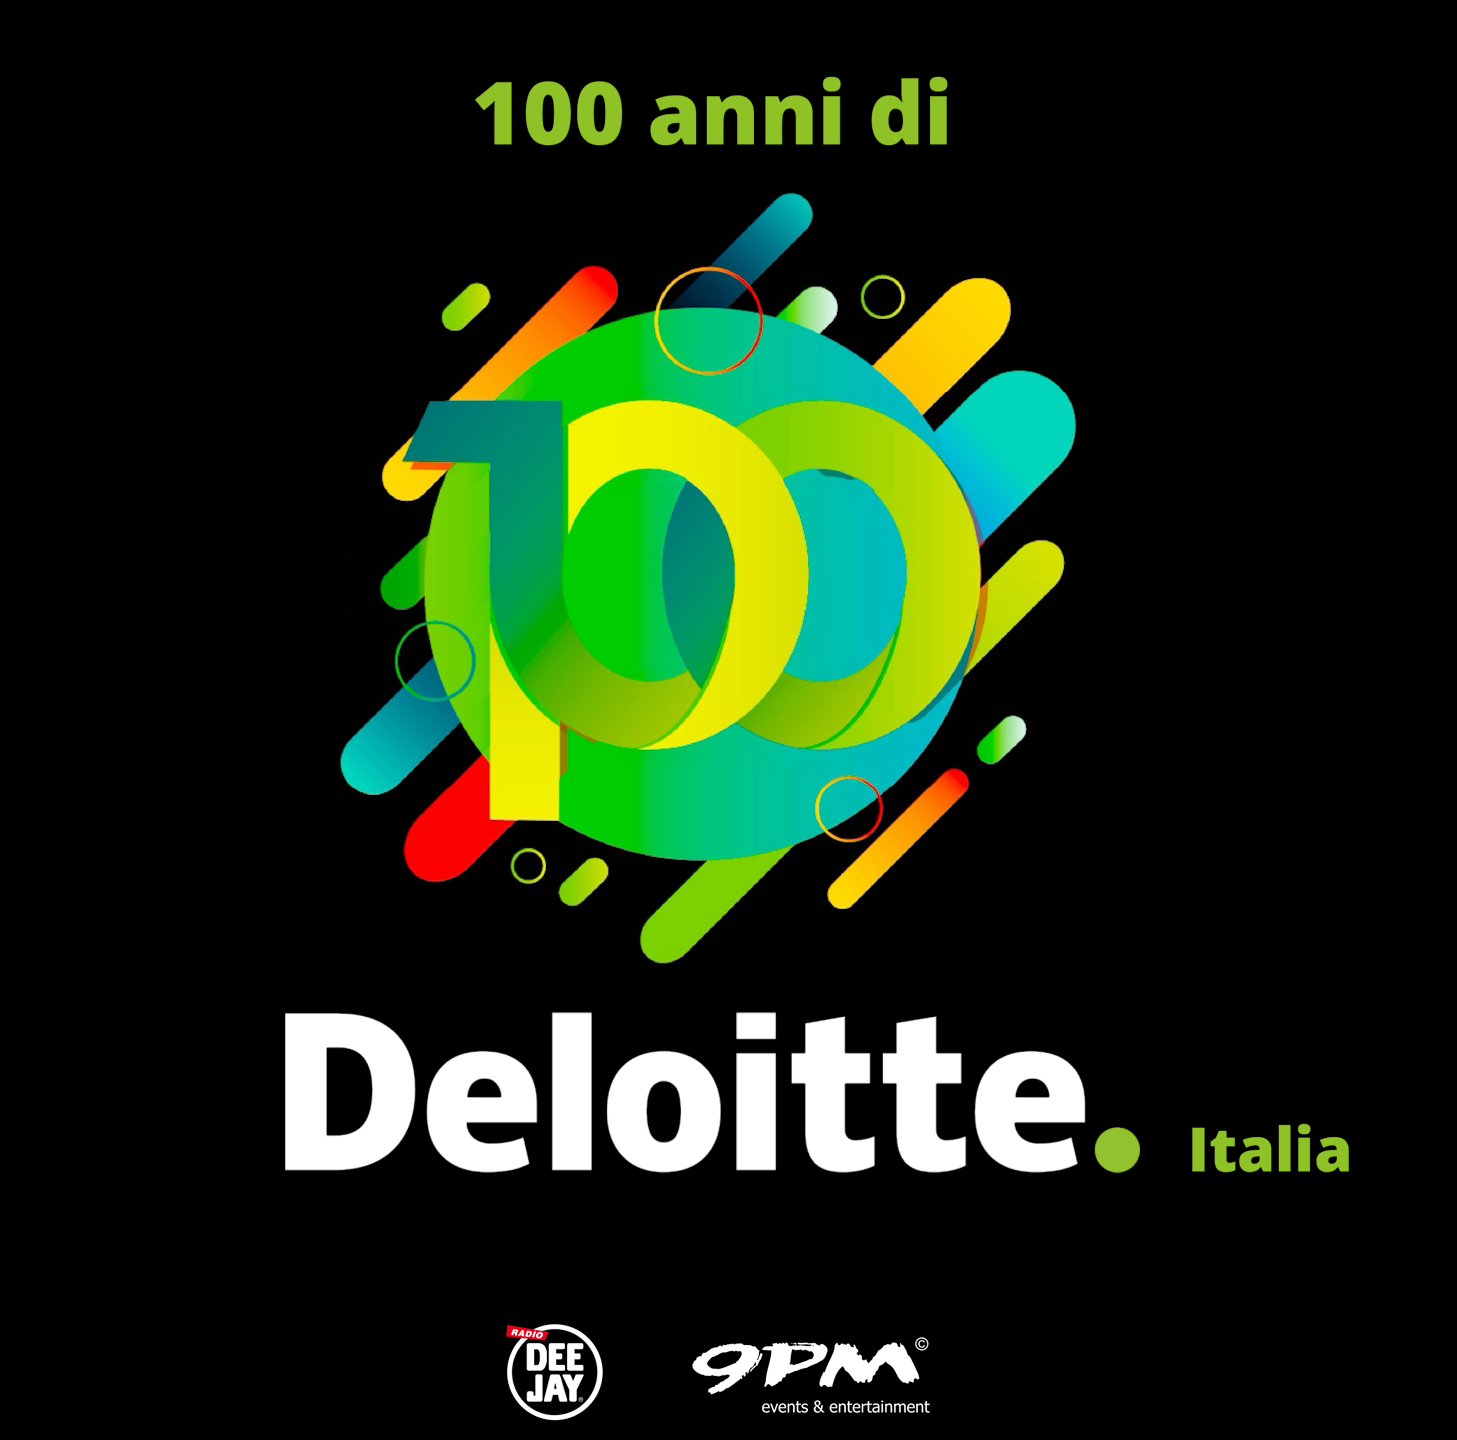 100 anni di Deloitte Italia cover